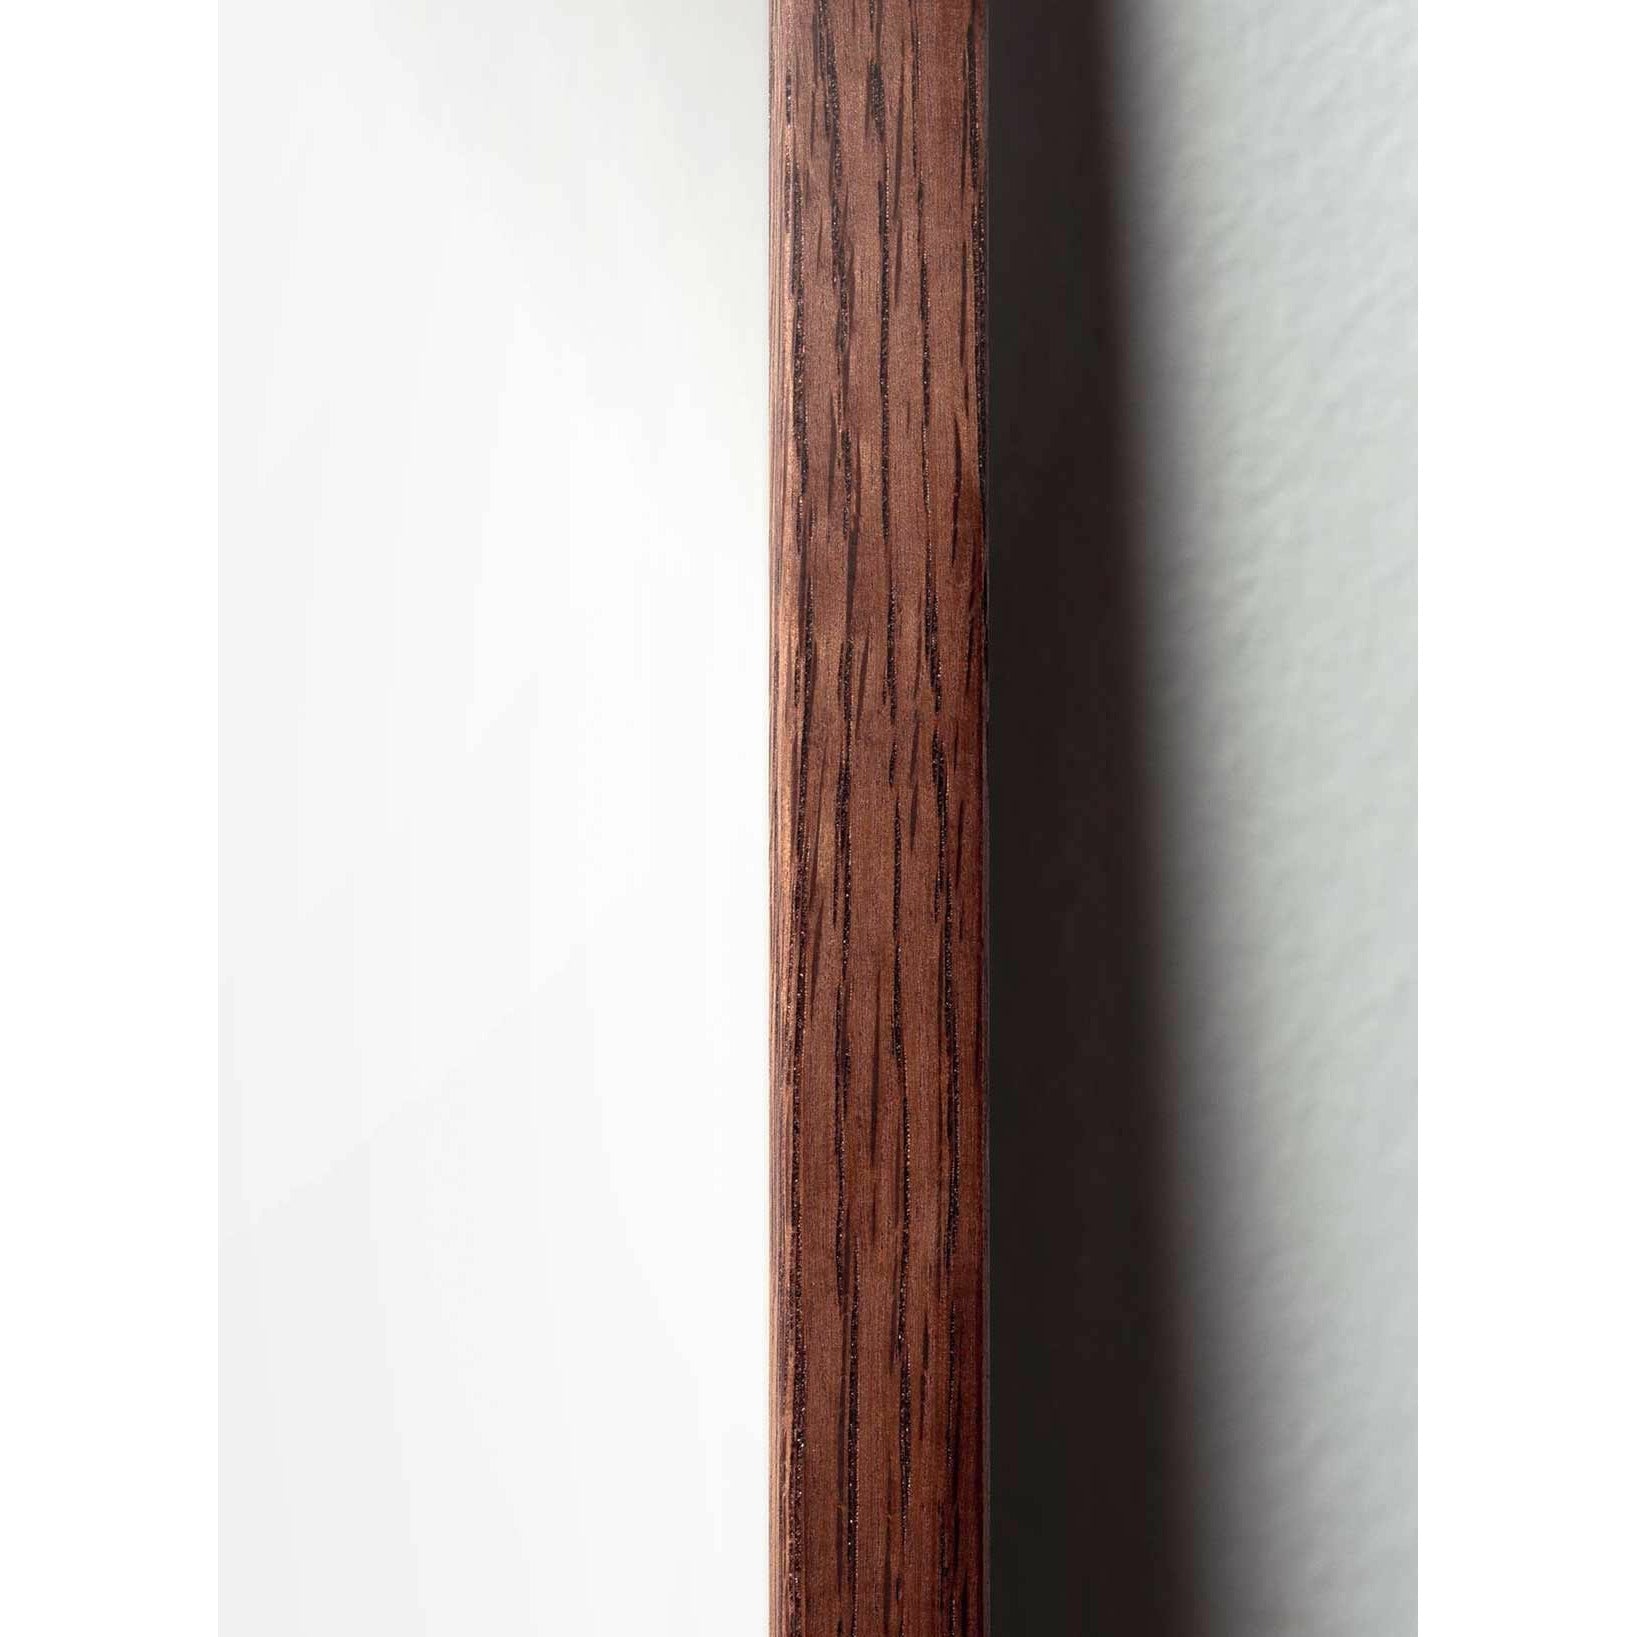 brainchild Munan ristimuodon juliste, tummapuusta valmistettu runko 50x70 cm, ruskea